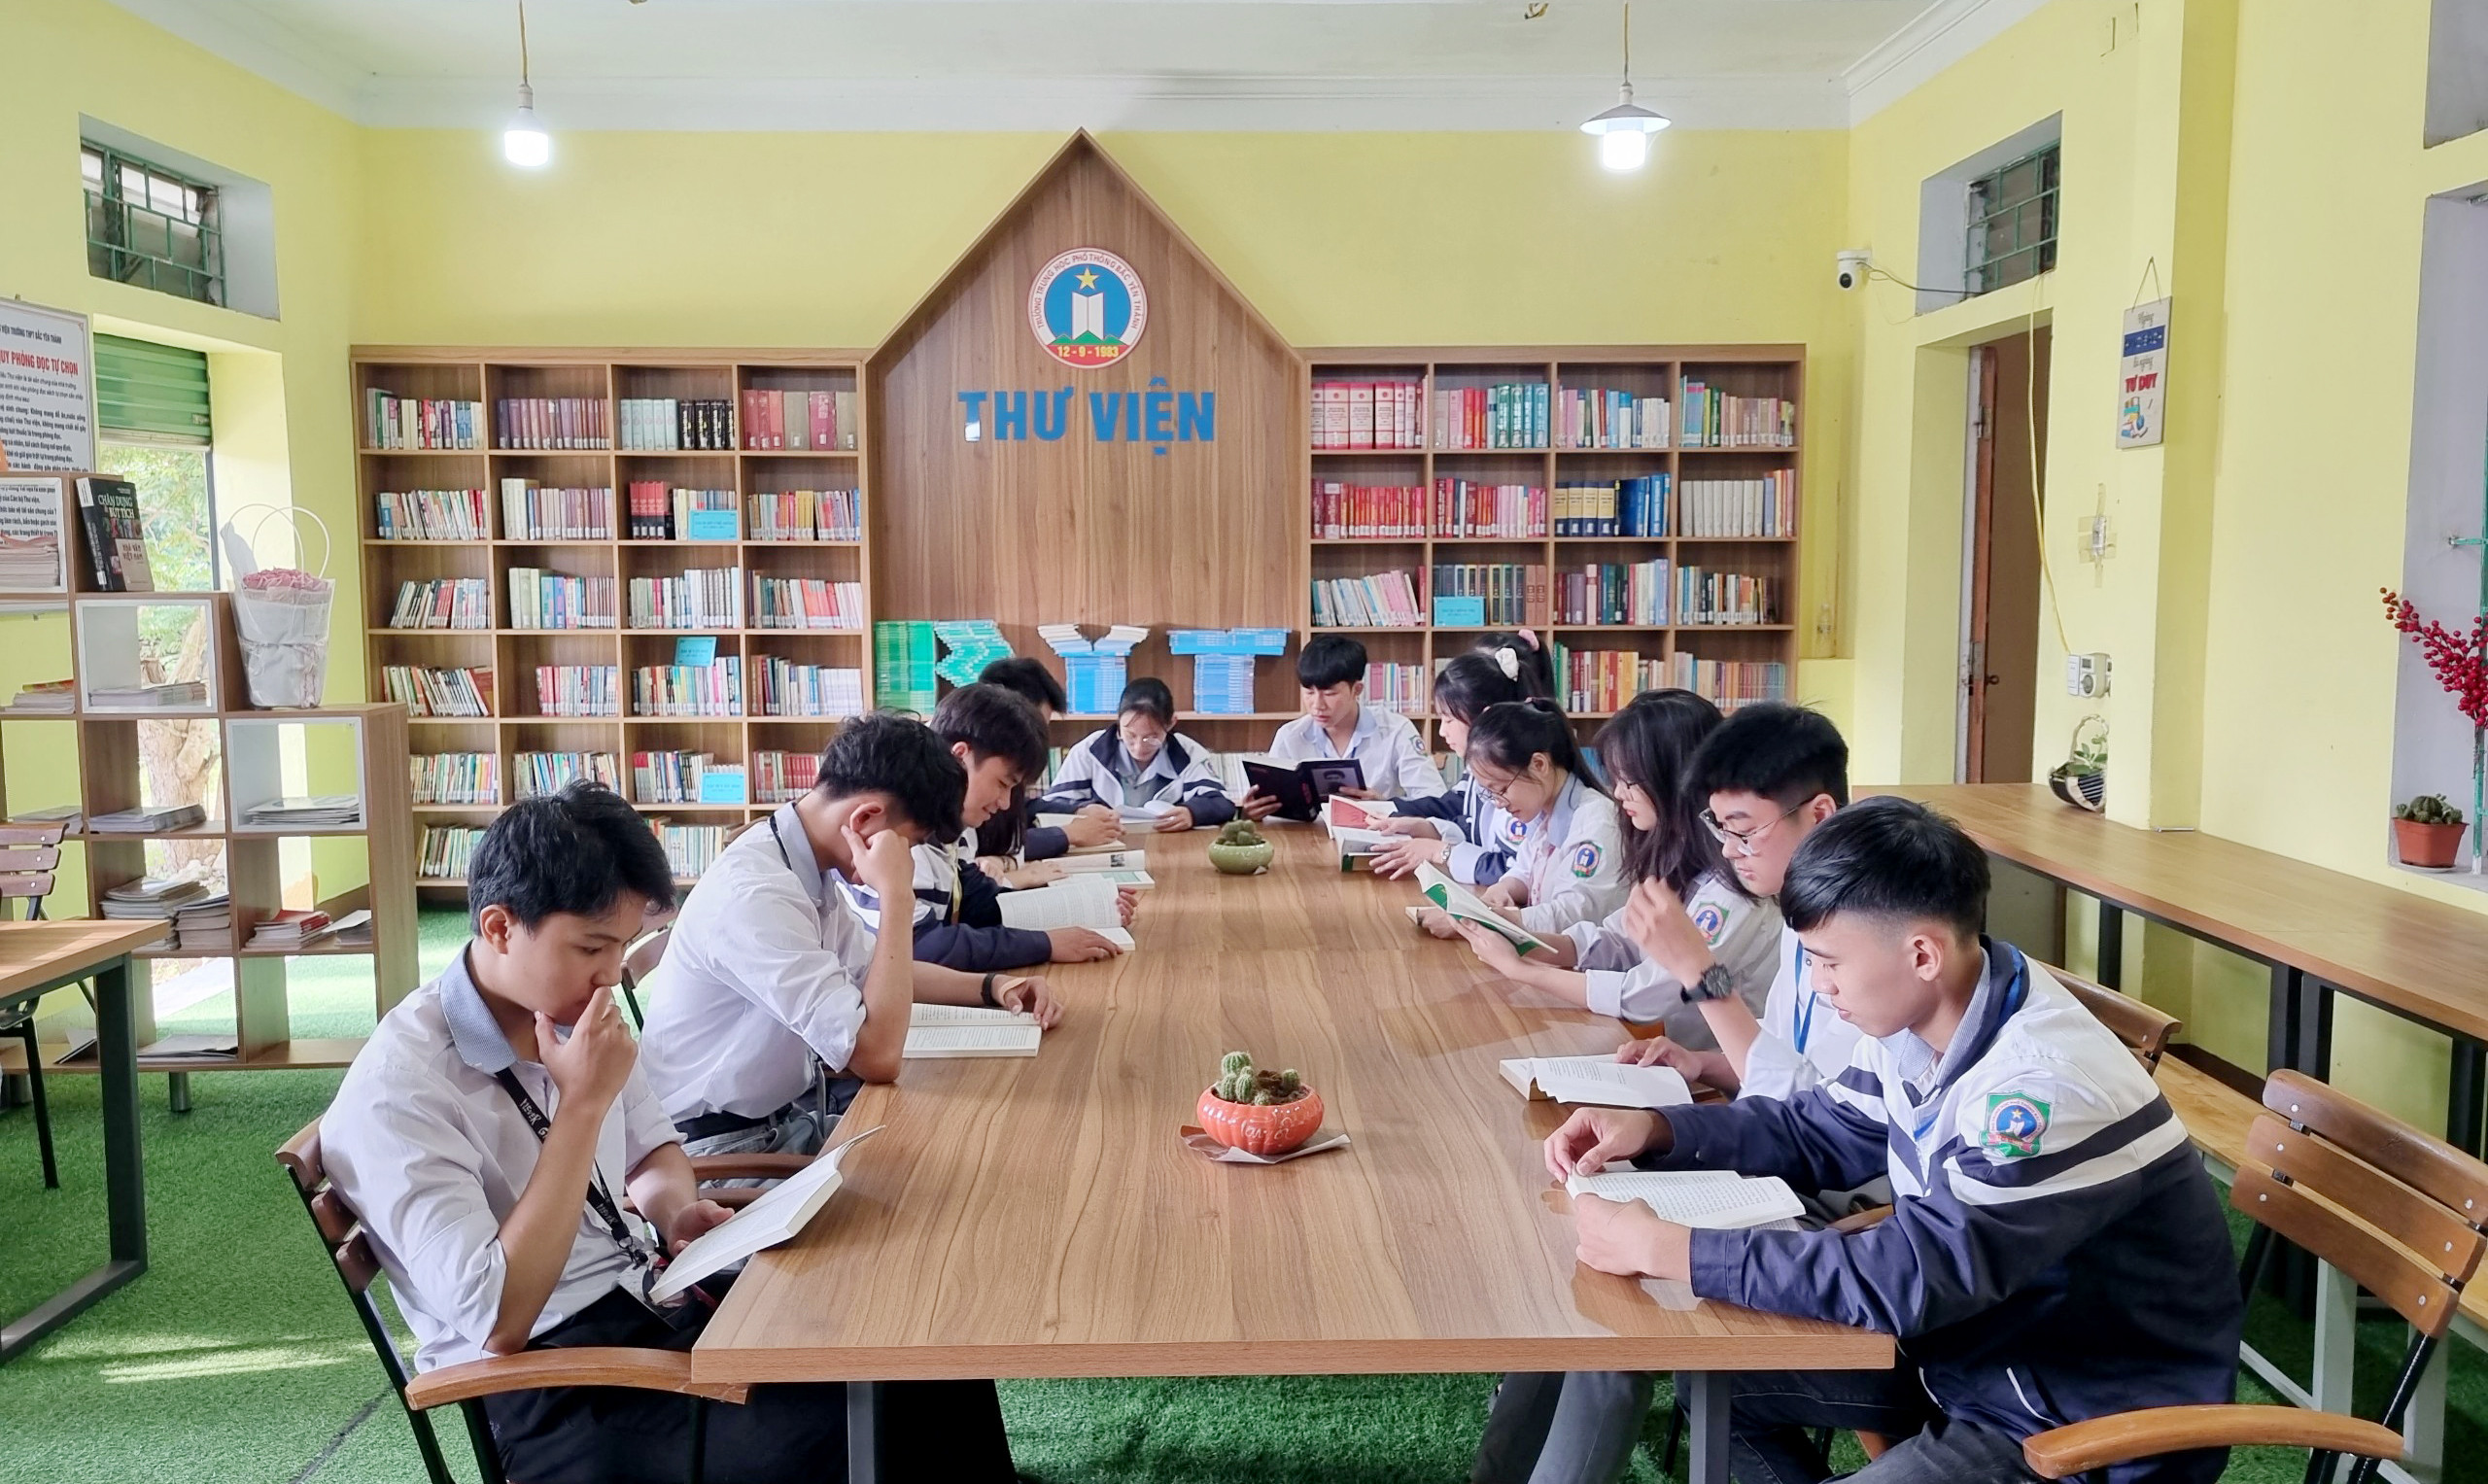 bna_Thư viện Trường THPT Bắc Yên Thành được đầu tư khang trang để phục vụ việc dạy và học của giáo viên và học sinh nhà trường..jpg